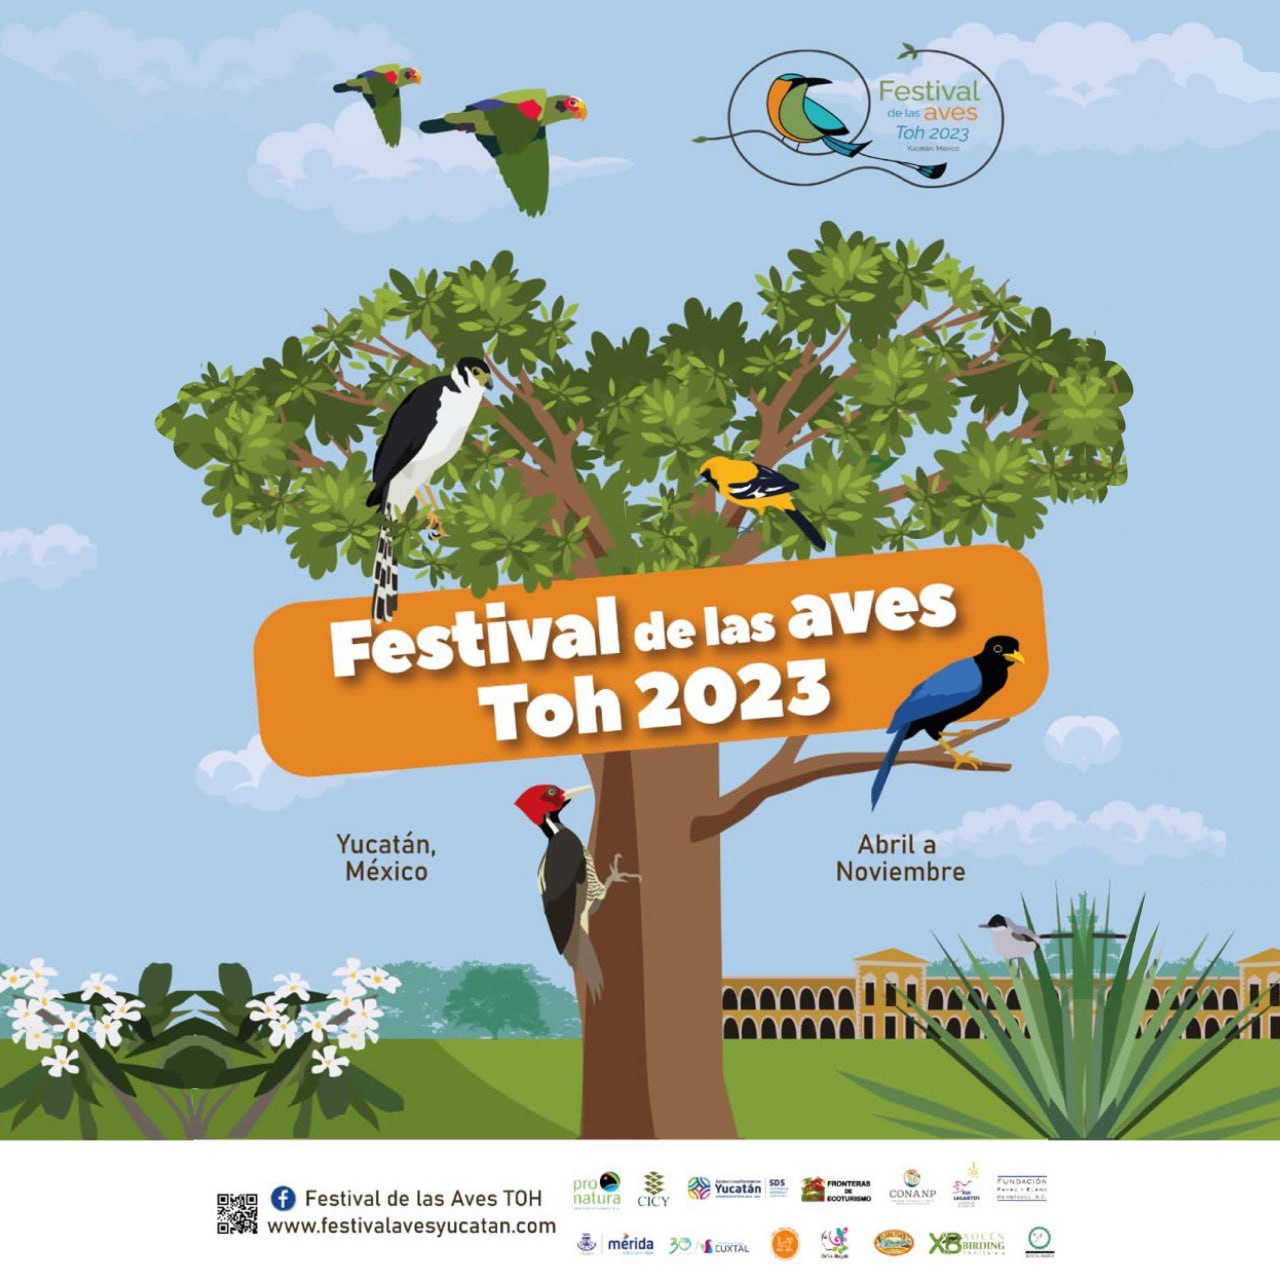 El Festival de las "Aves Toh" es un evento educativo y de ecoturismo organizado por el Gobierno del Estado de Yucatán en colaboración con diversas instituciones y organizaciones